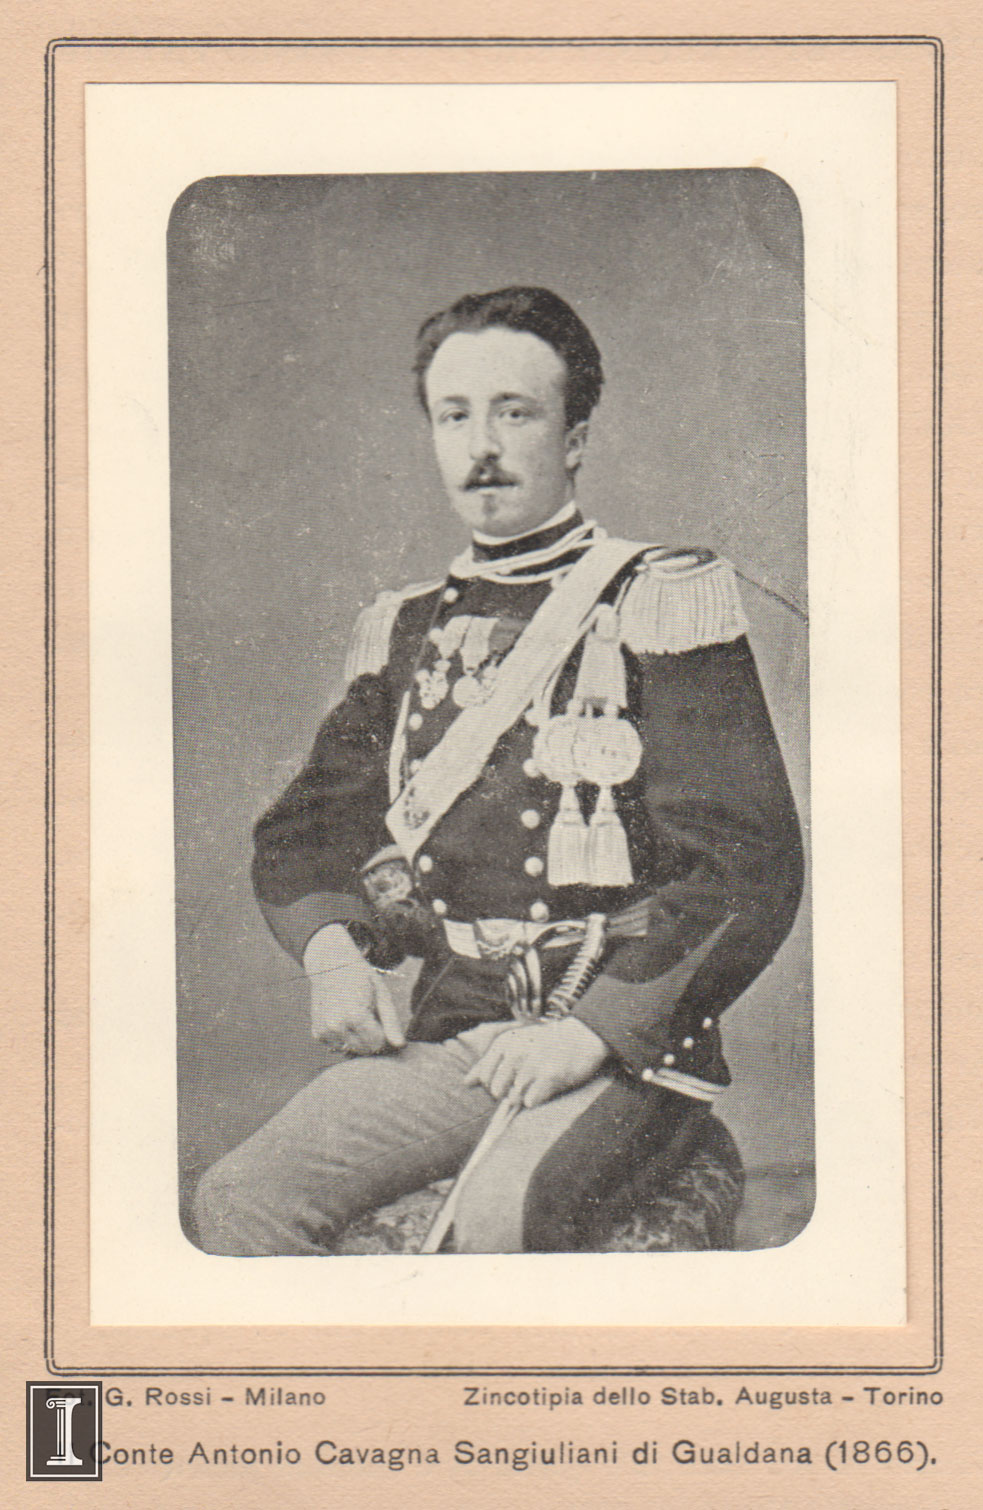 Count Cavagna in 1866